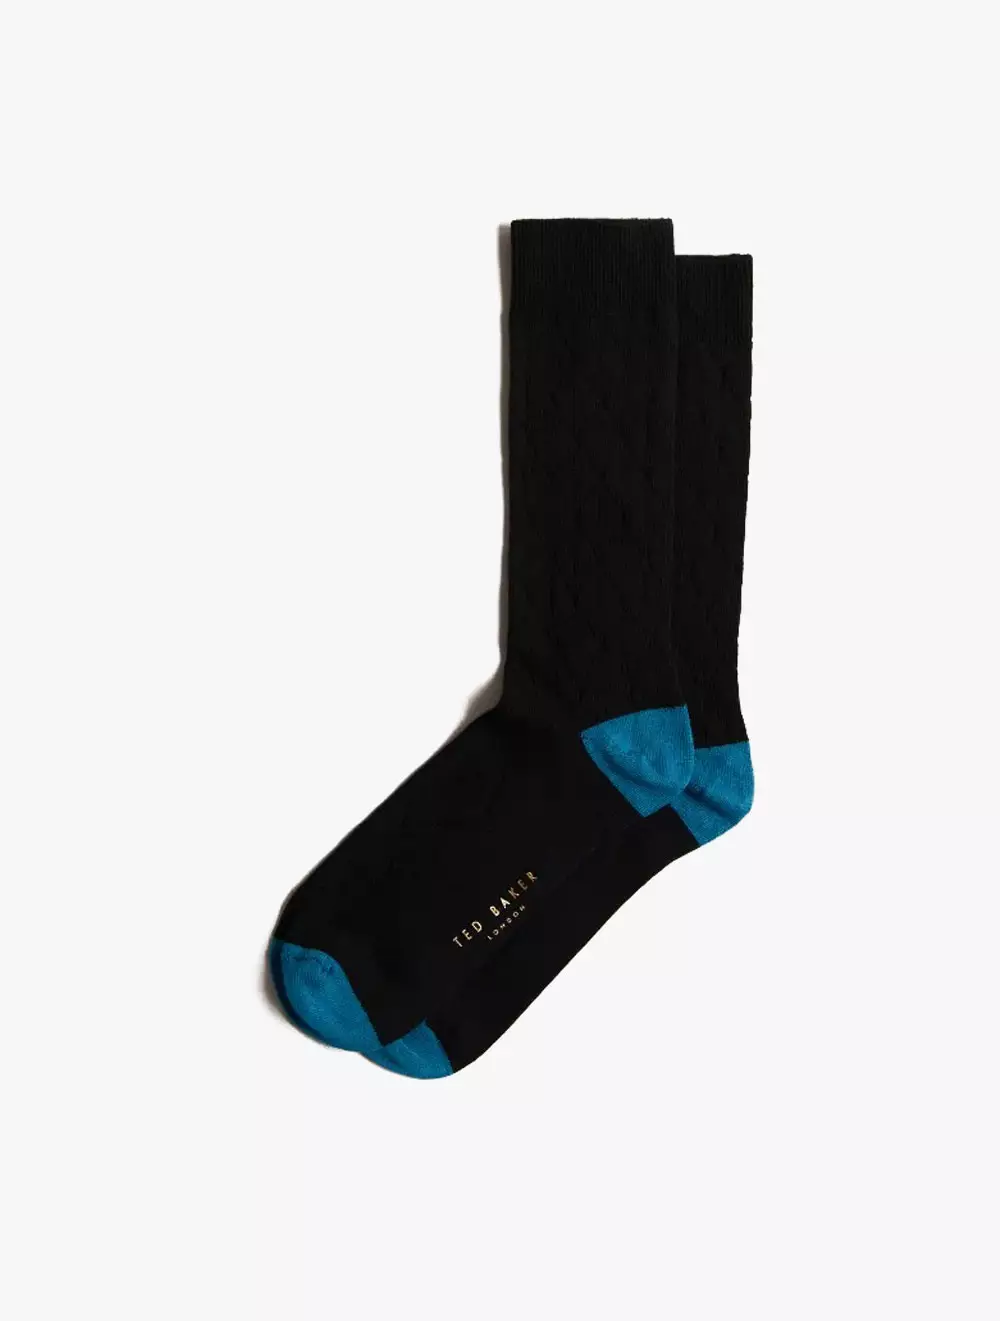 REDHOT - Branded Sports Sock